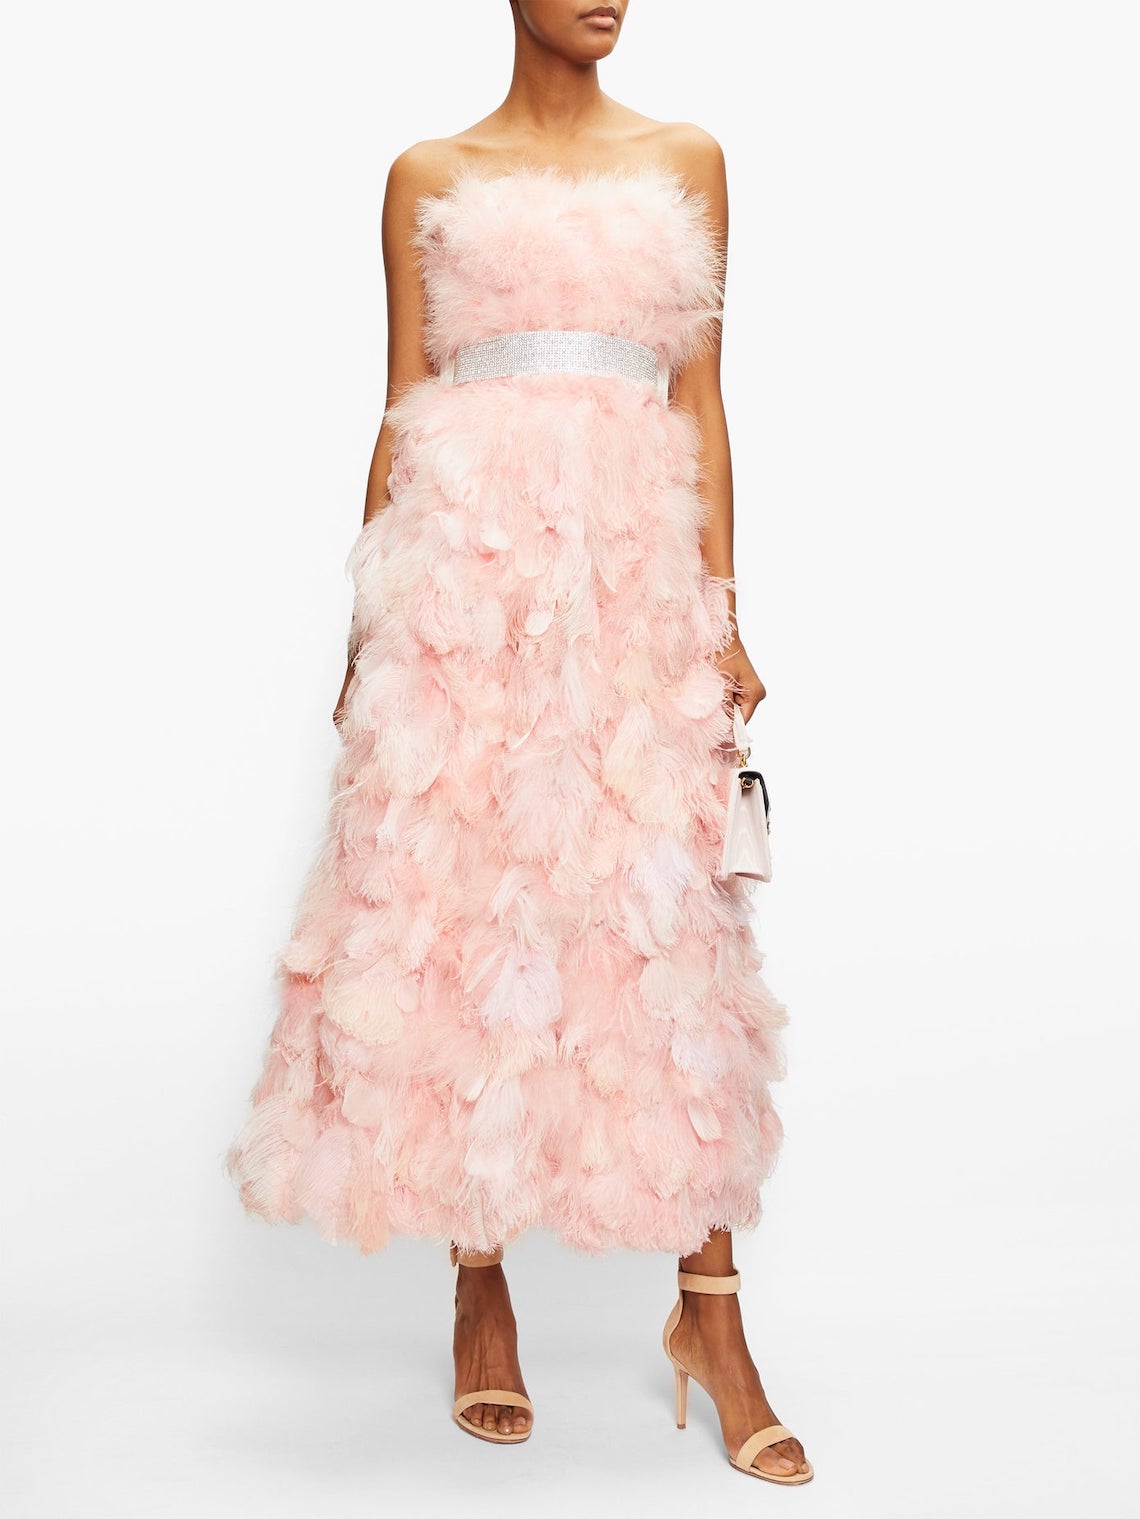 Dolce and Gabbana Feather Pink Wedding Dress Best Pink Wedding Dresses for 2021 2022 Brides Bridal Musings 1 - 30 chiếc áo dài cưới màu hồng dành cho cô dâu yêu thích sắc màu